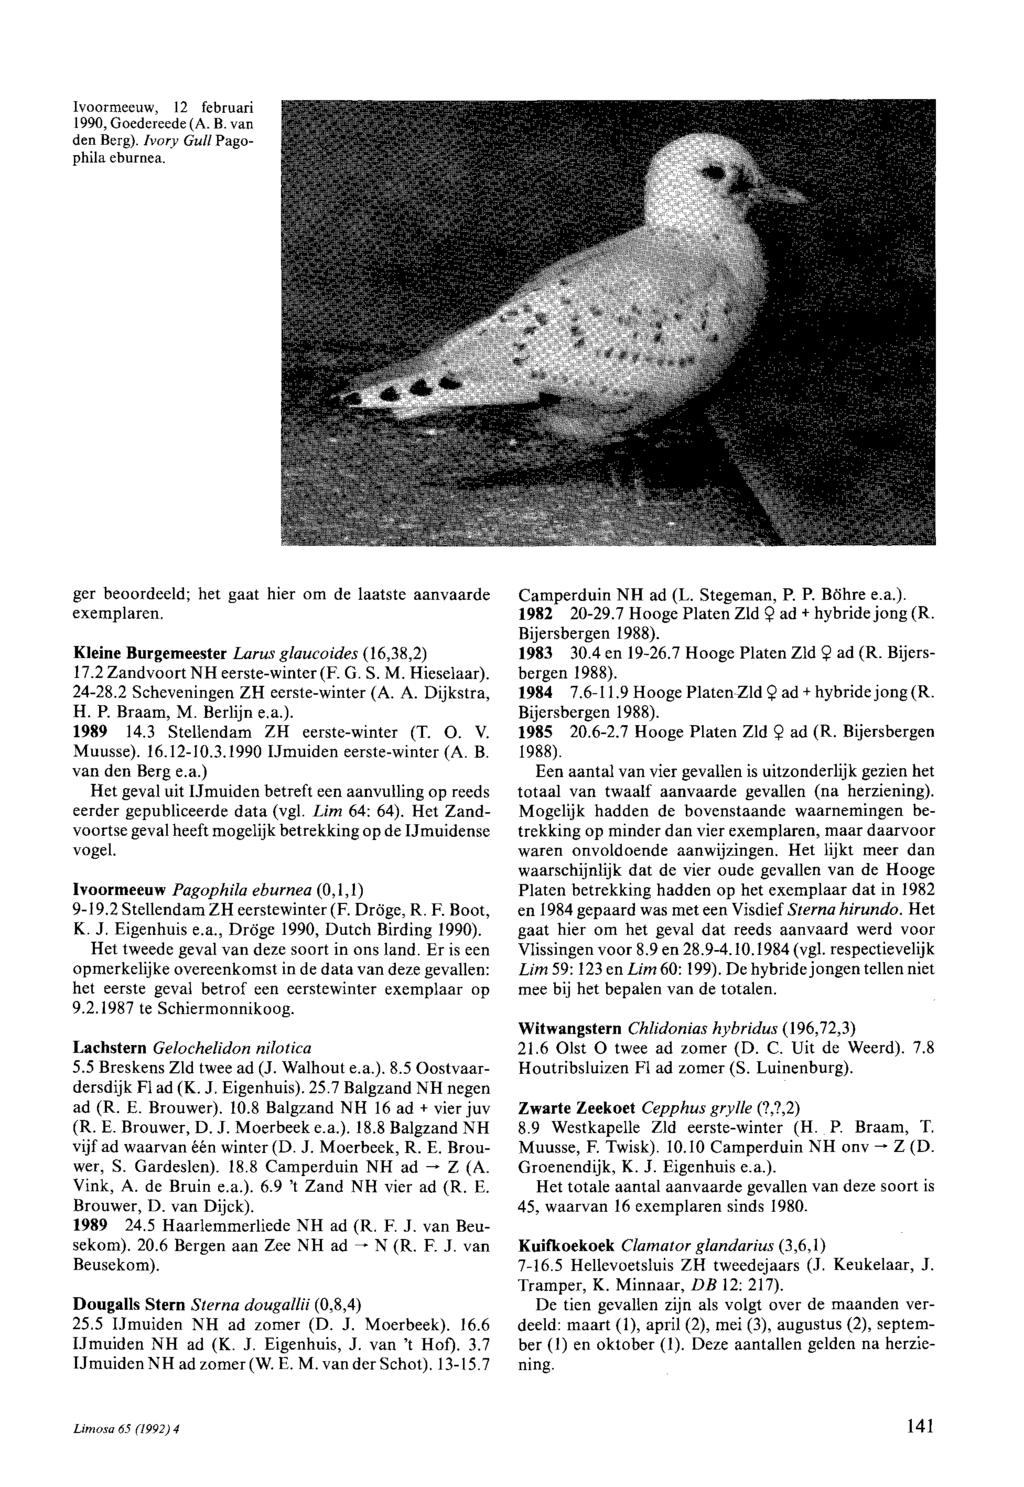 lvoormeeuw, 12 februari 1990, Goedereede (A. B. van den Berg). Ivory Gull Pagophi1a eburnea. ger beoordeeld; het gaat hier om de laatste aanvaarde exemplaren.